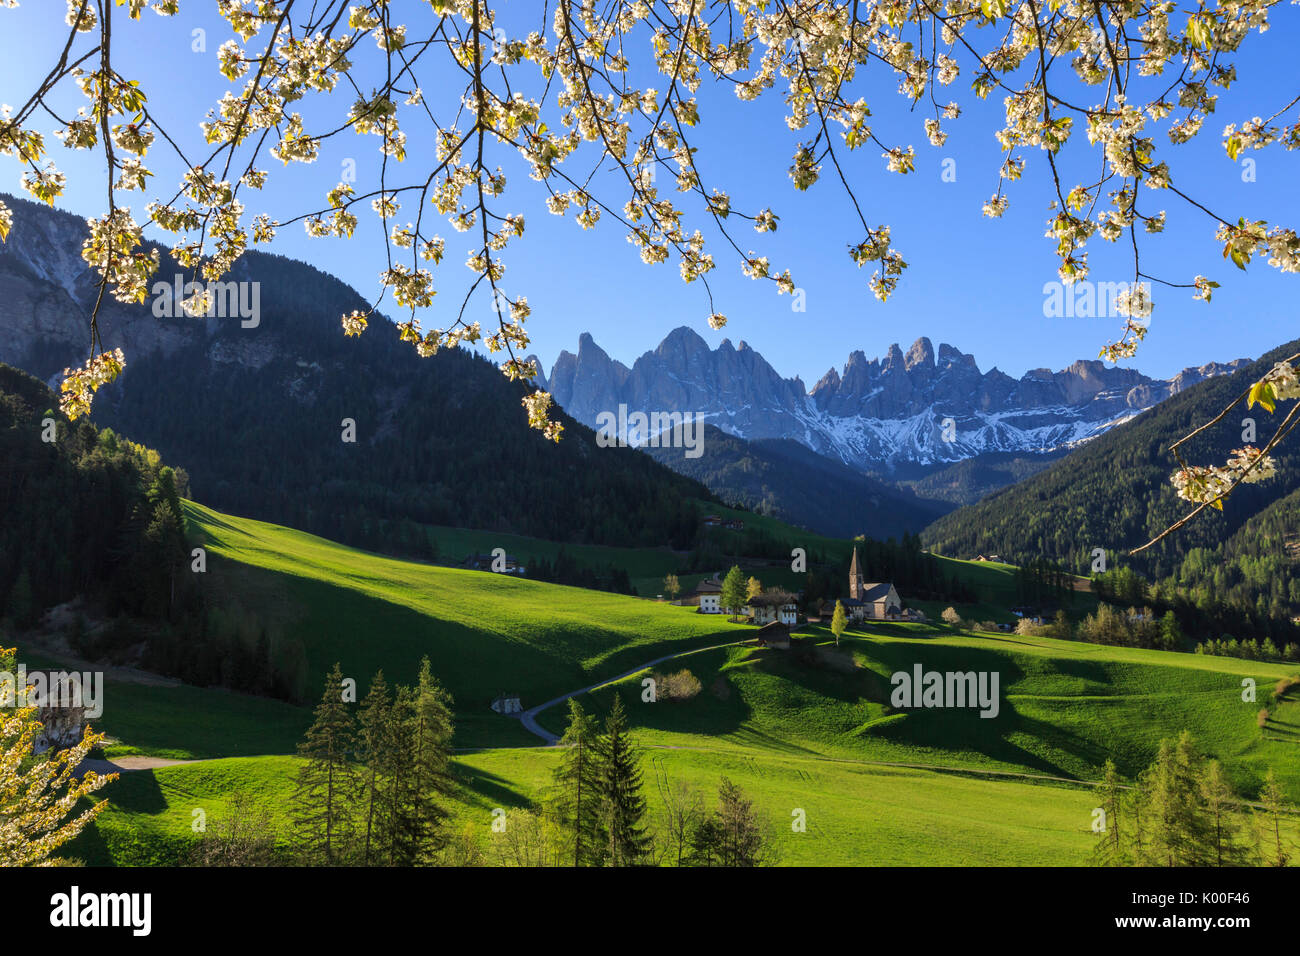 Blühende Rahmen das Dorf St. Magdalena und der Geisler-Gruppe. Villnösser Tal Südtirol Dolomiten Italien Europa Stockfoto